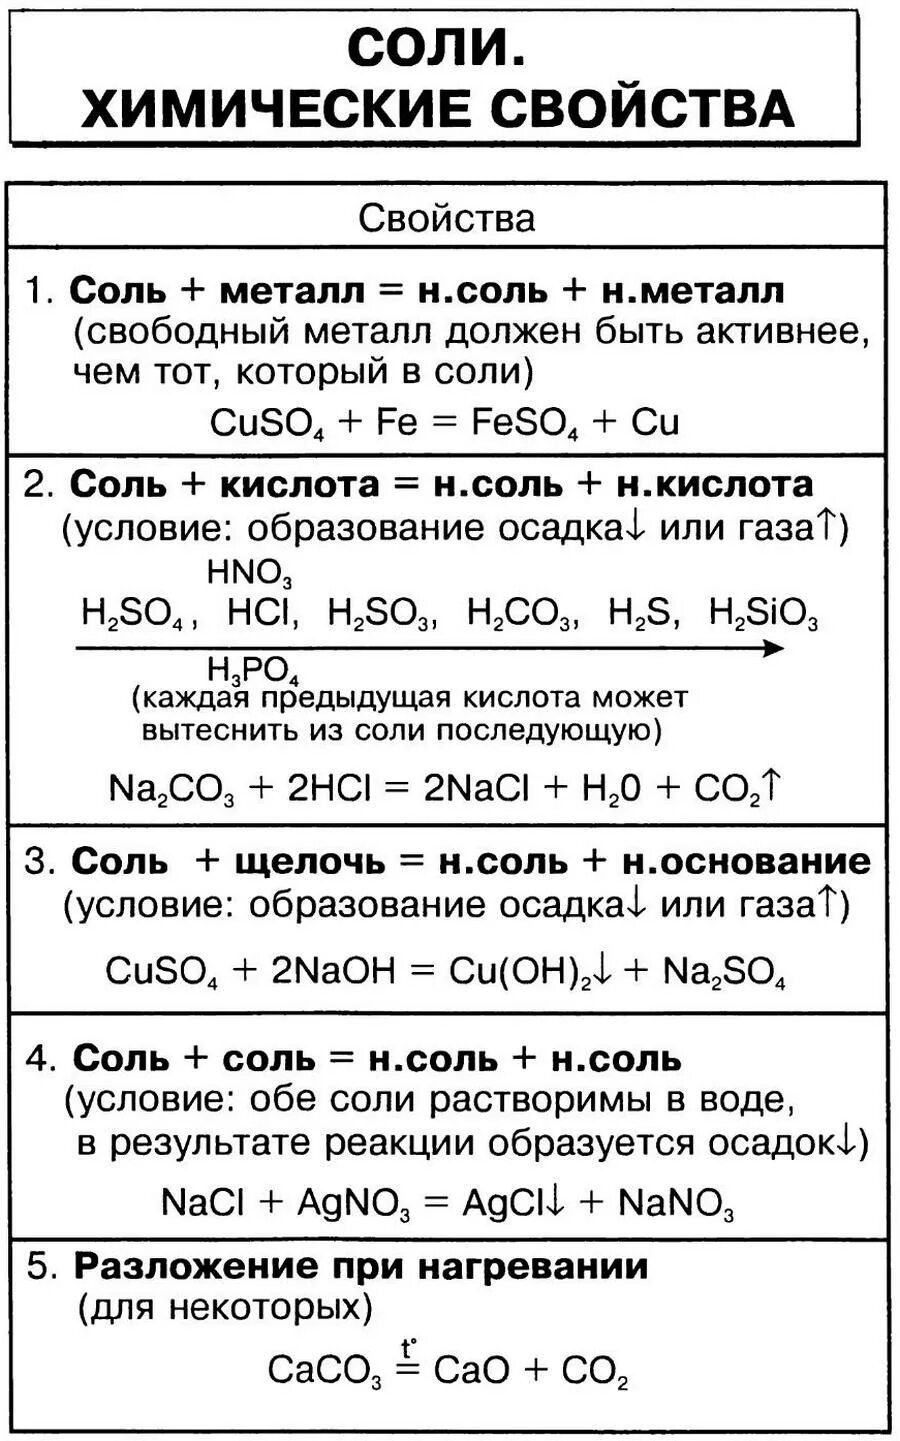 Химические свойства солей 8 класс химия таблица. Свойства солей химия 8 класс. Соли химические свойства 8 класс таблица. Химические свойства солей 8 класс.